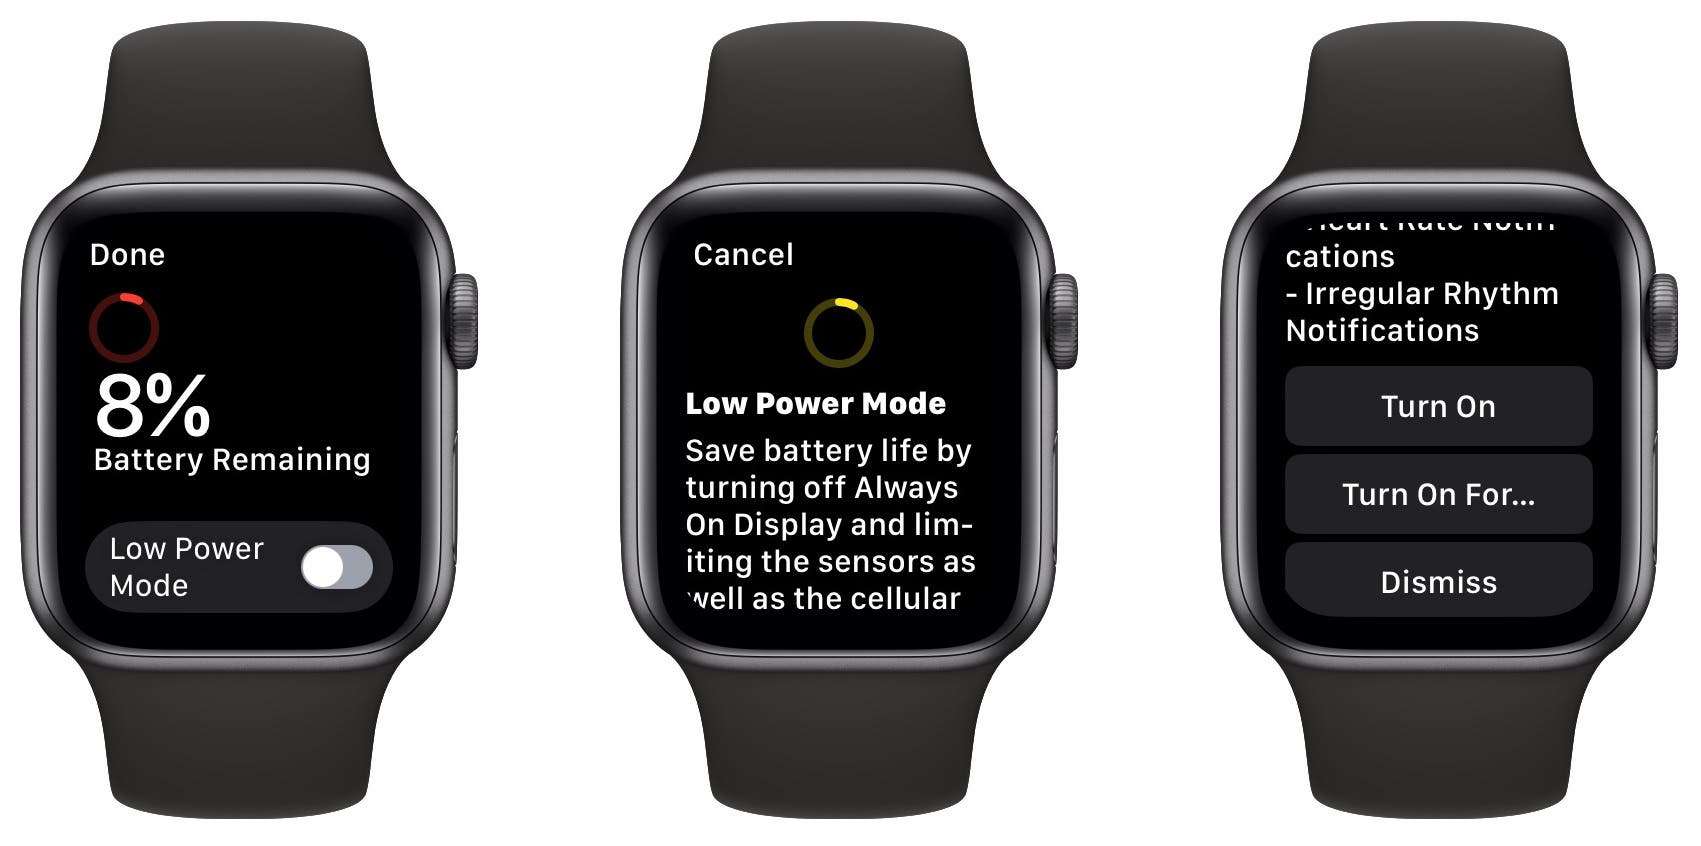 Low Power Mode on Apple Watch